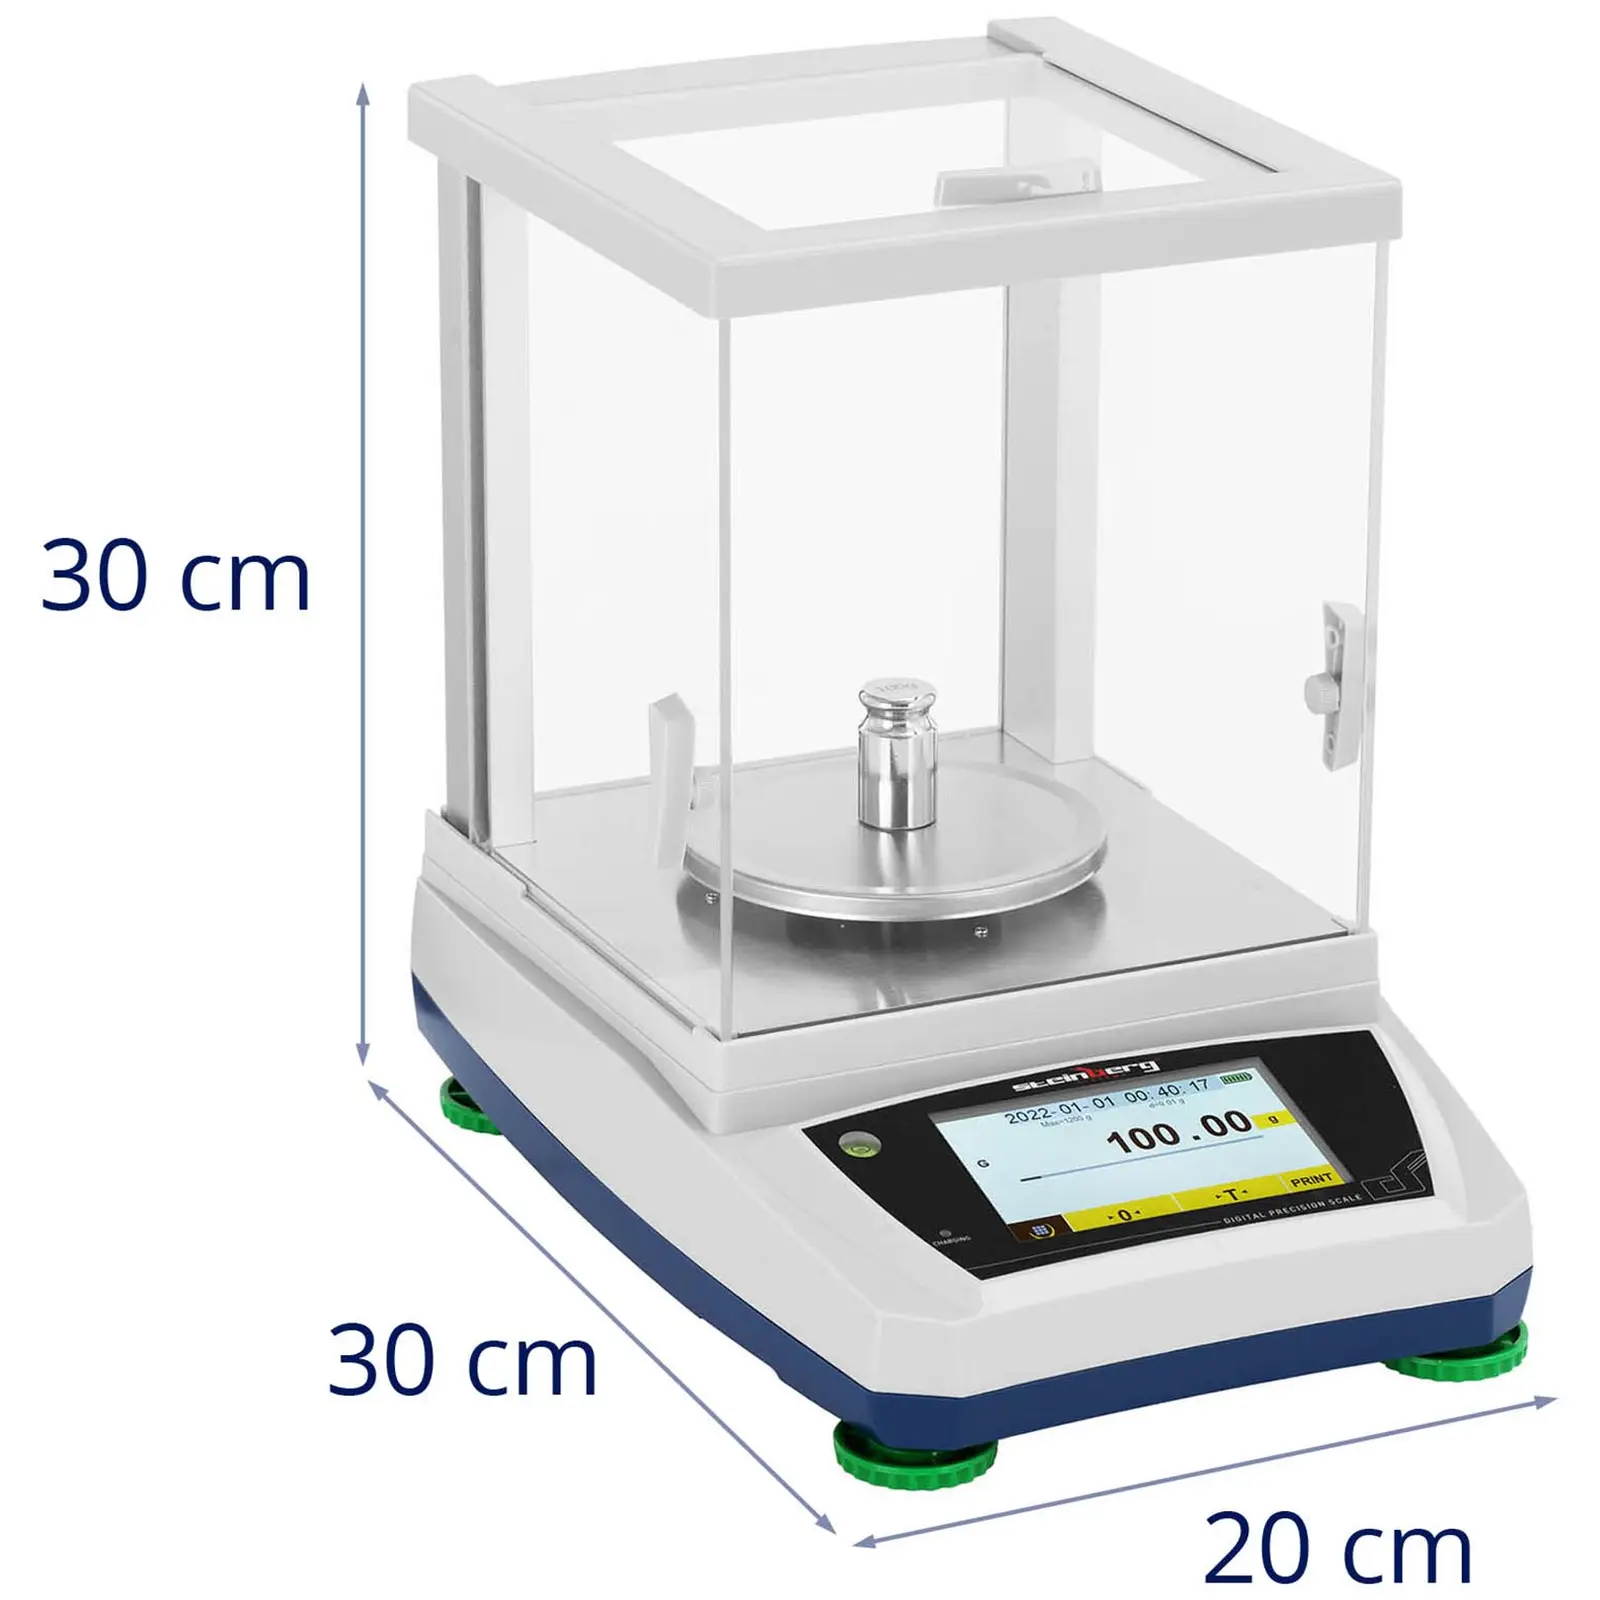 Balança de laboratório - 1200 g / 0,01 g - Ø115 mm - painel táctil LCD - bateria recarregável - cobertura de vidro contra fatores externos